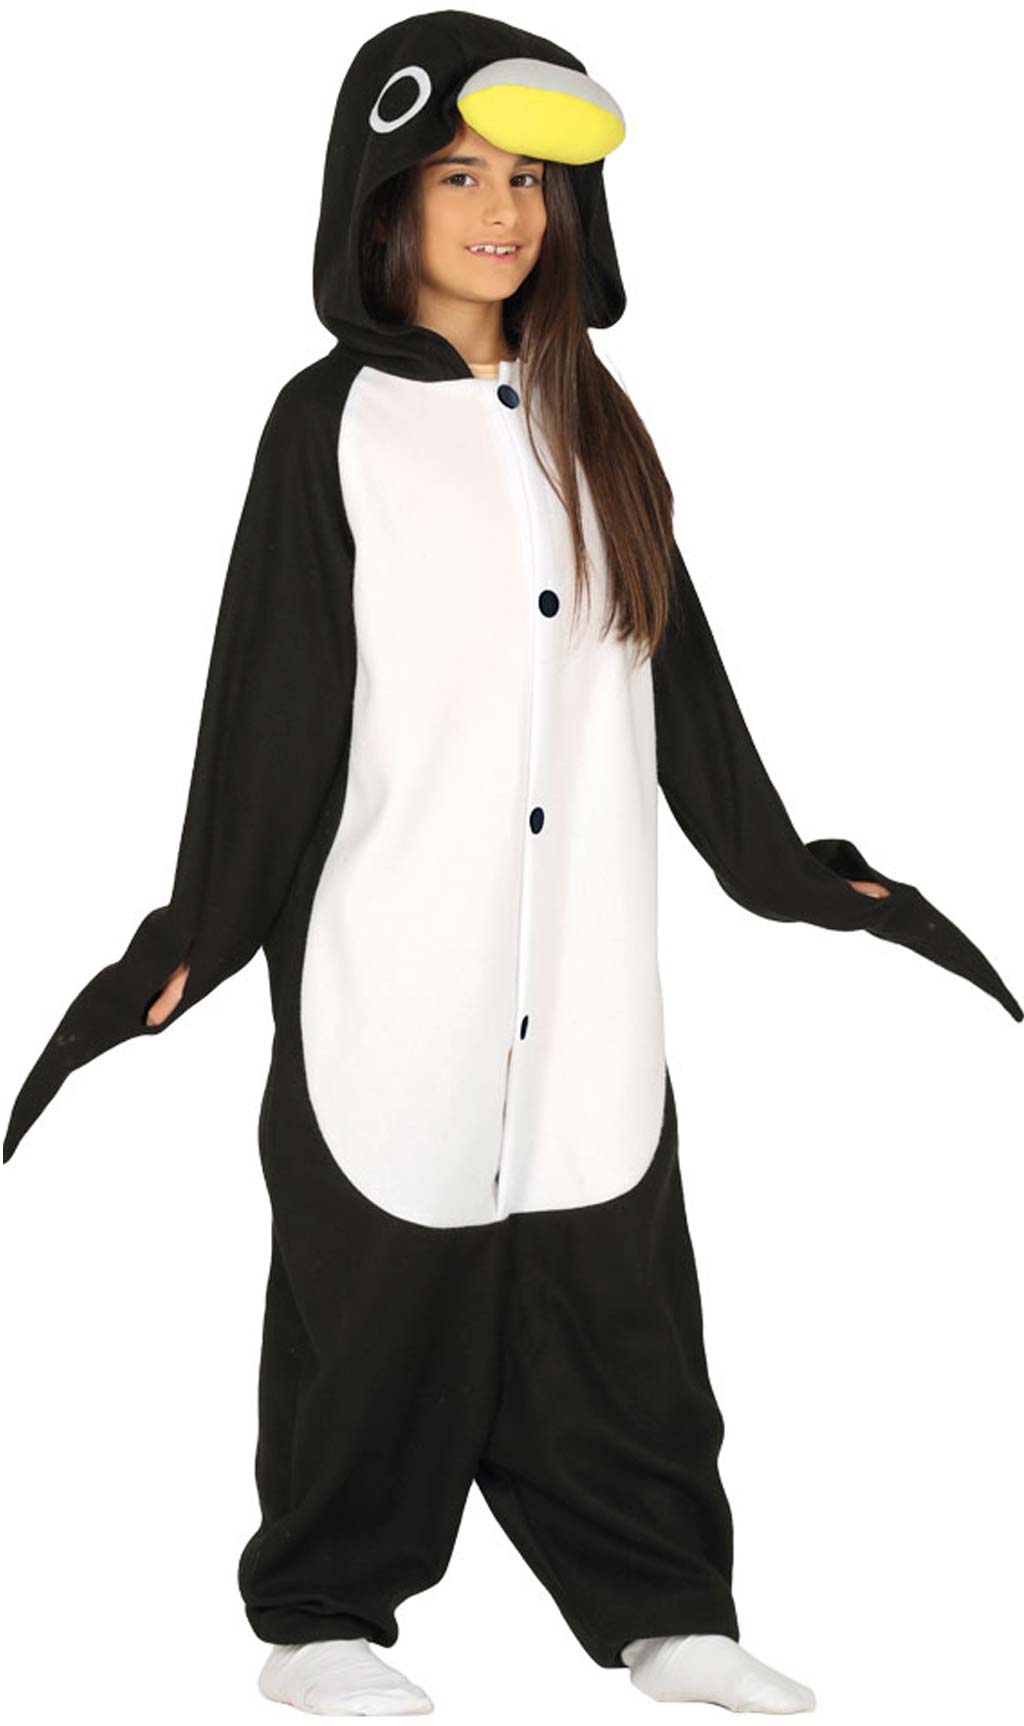 Disfraces en Grupo de Pingüinos